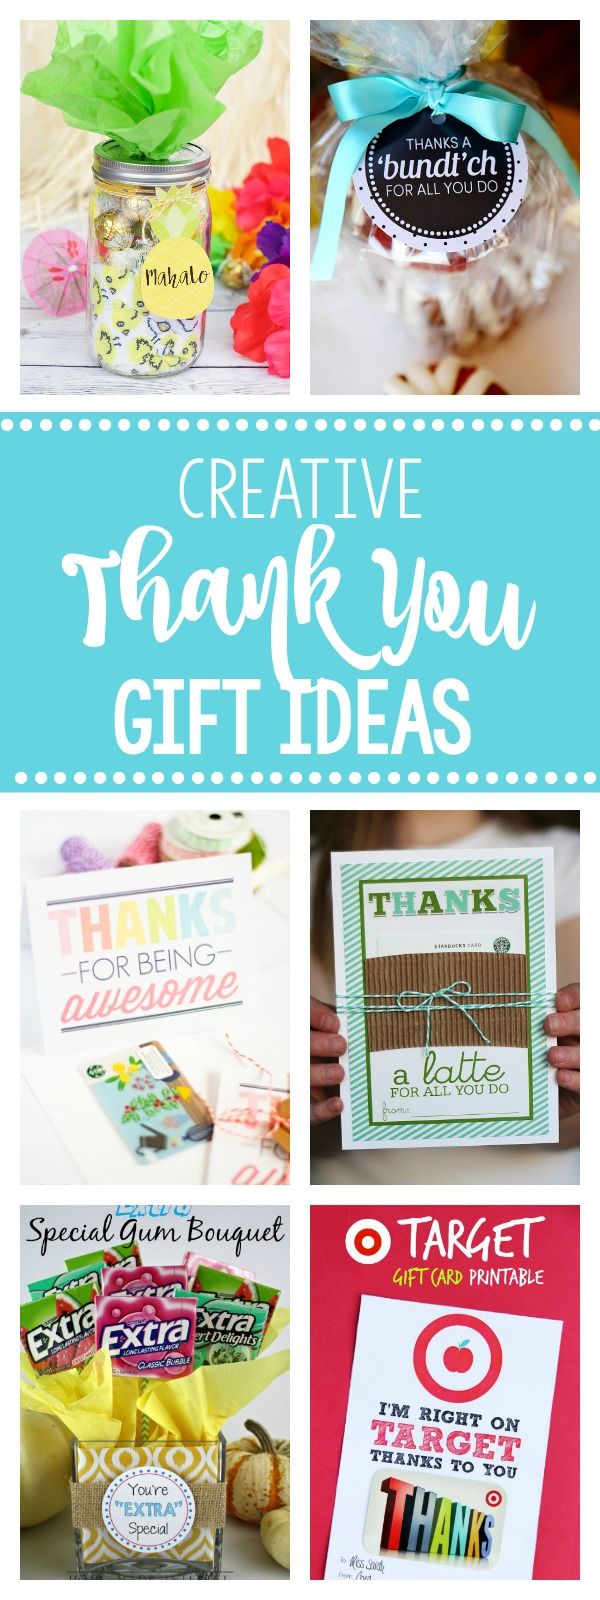 25 Thank You Gift Ideas-Fun & Creative Ways to Say Thanks